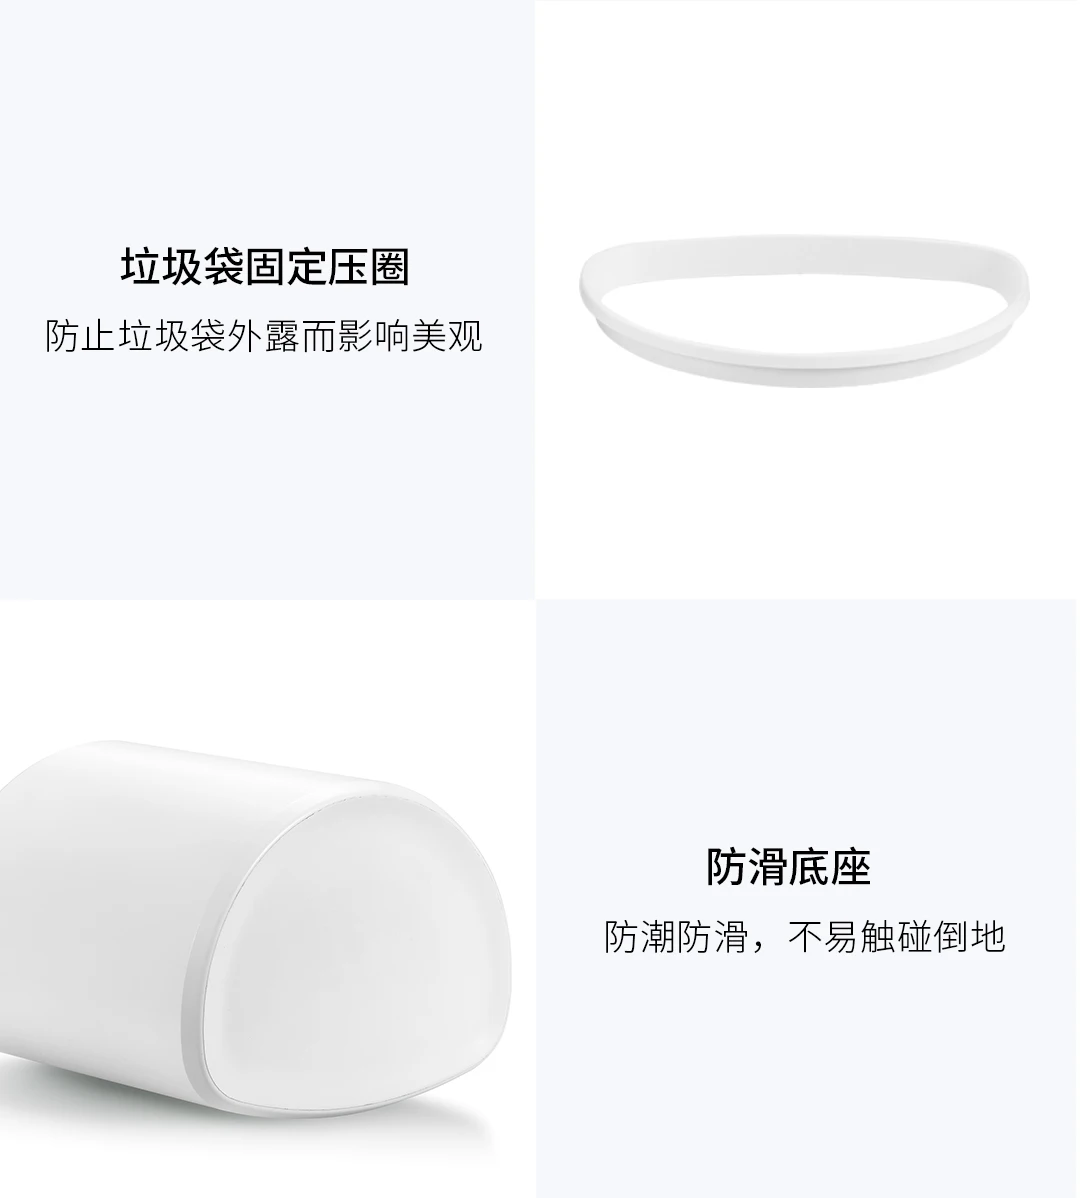 Xiaomi Mijia NINESTARS интеллектуальный датчик мусорный бак 10л емкость на кнопке управления регулируемое расстояние зондирования дома мусорное ведро